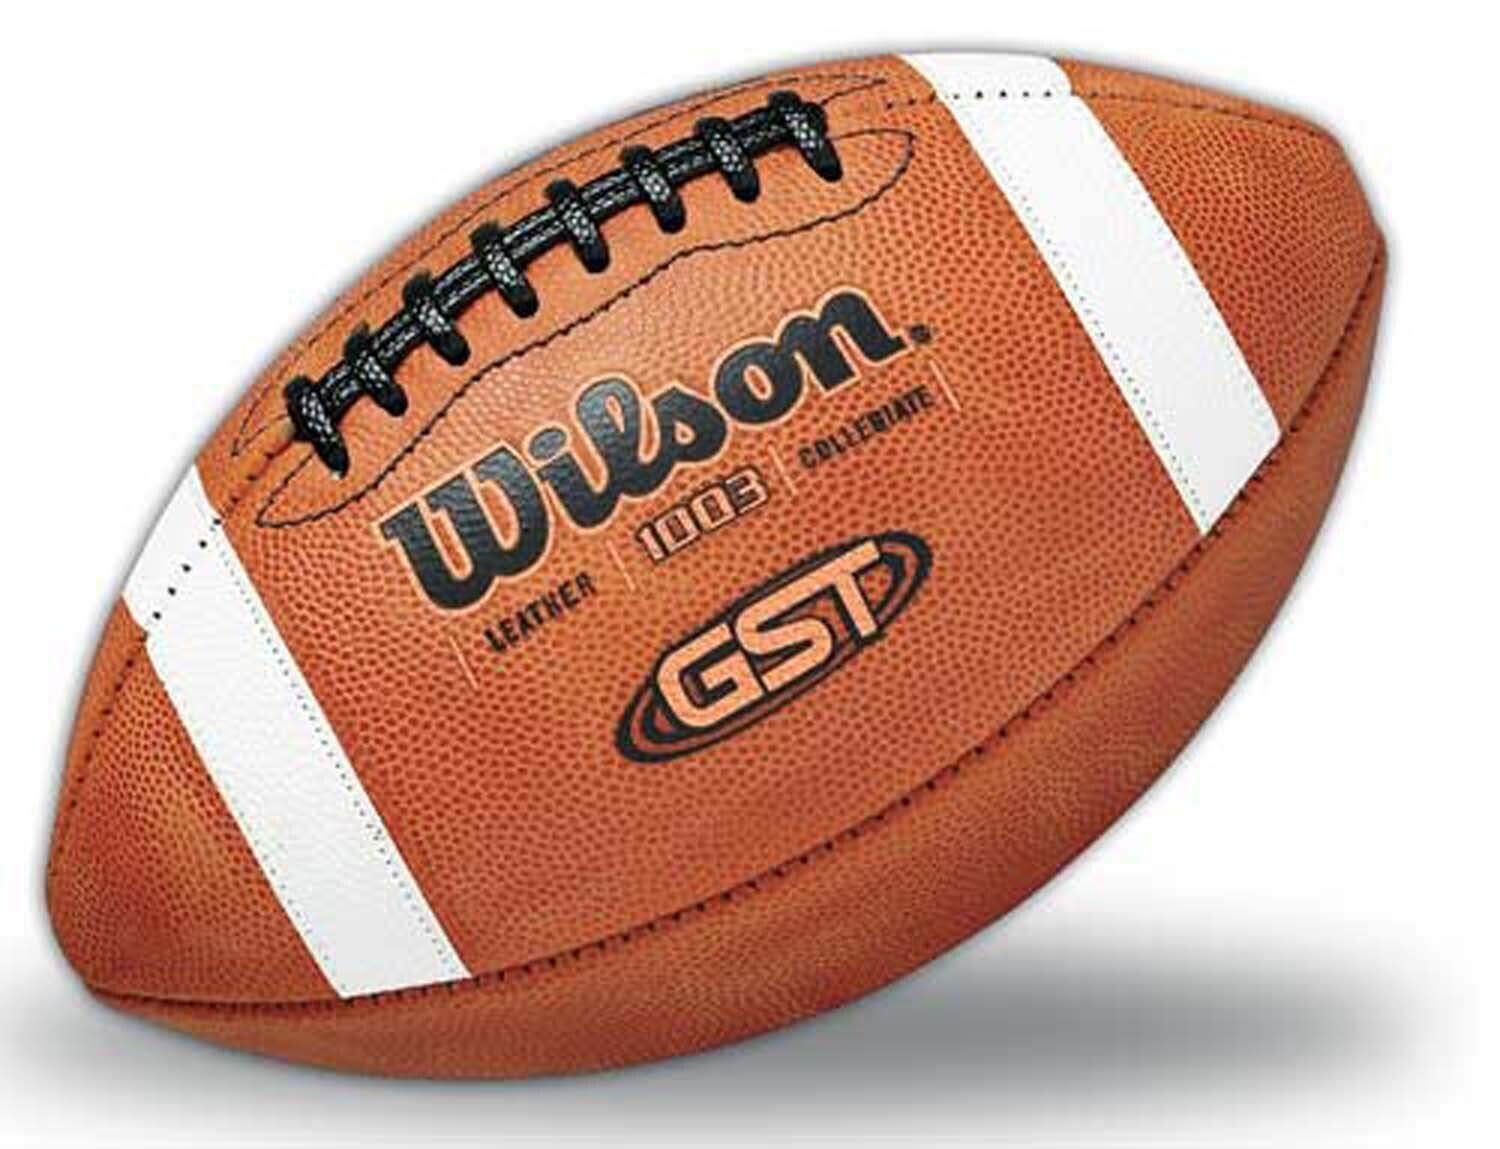 Balón de fútbol de cuero Wilson 1003 GST